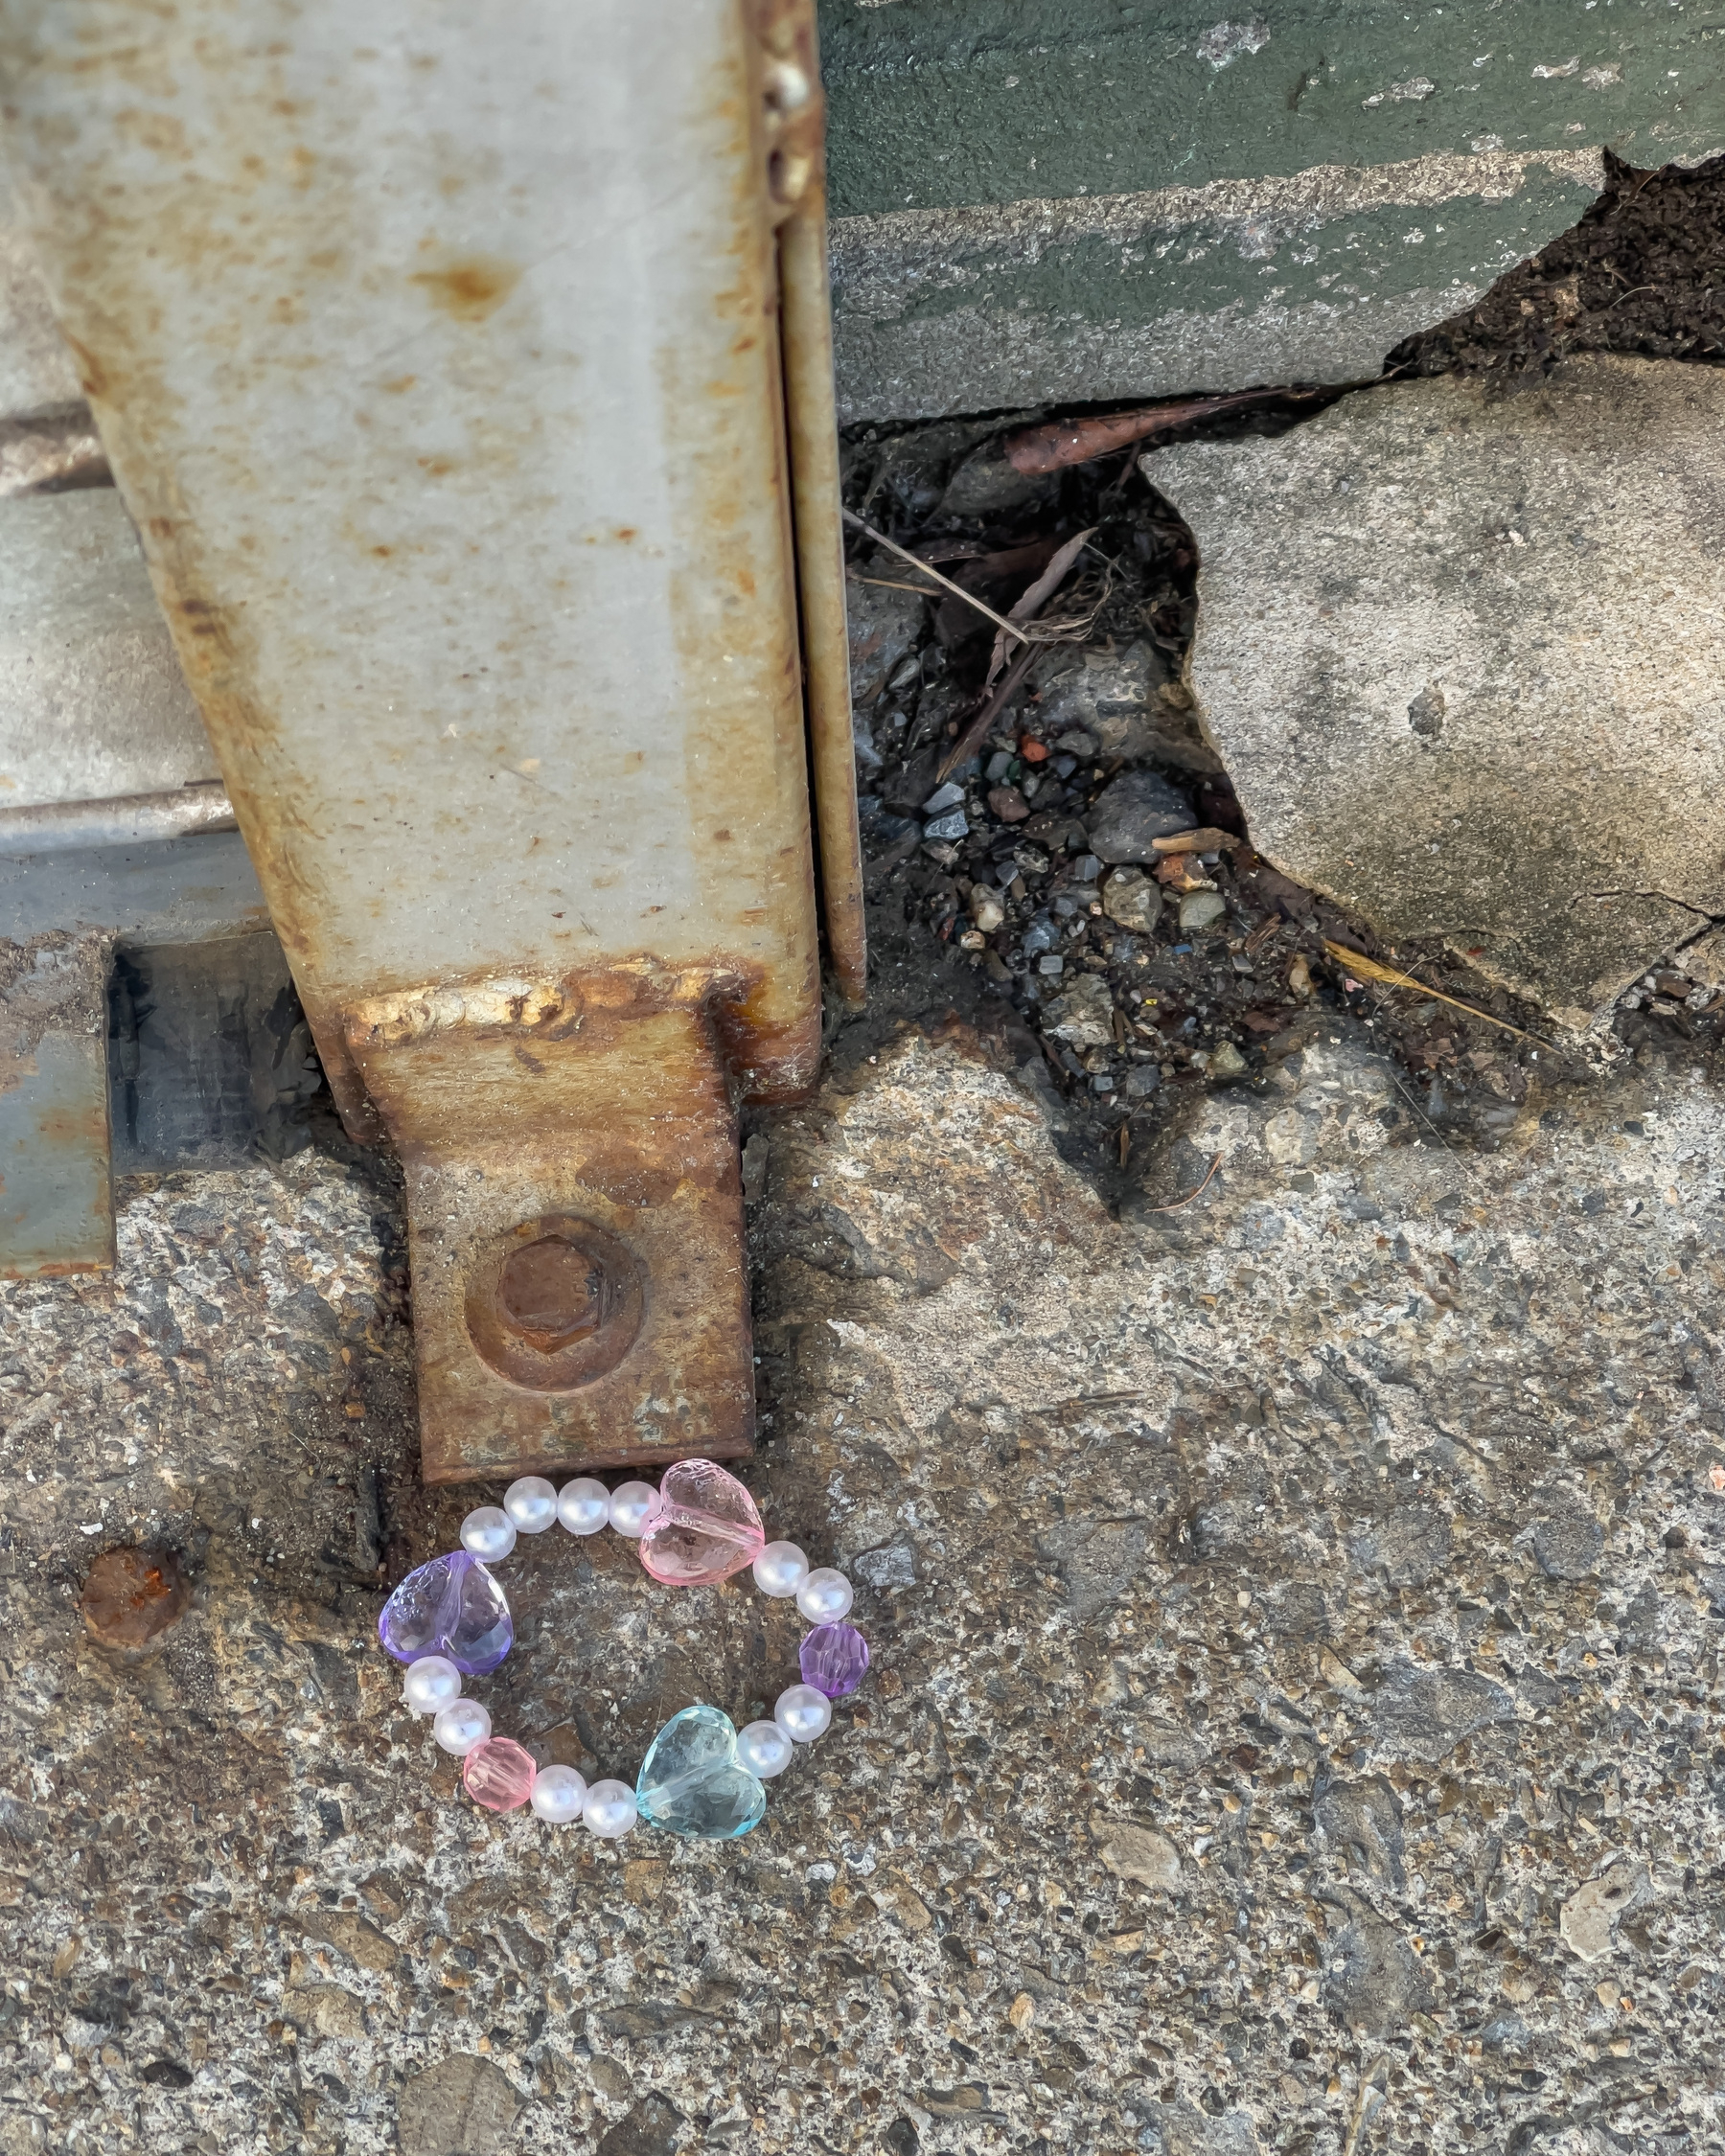 Child’s bracelet on the ground.